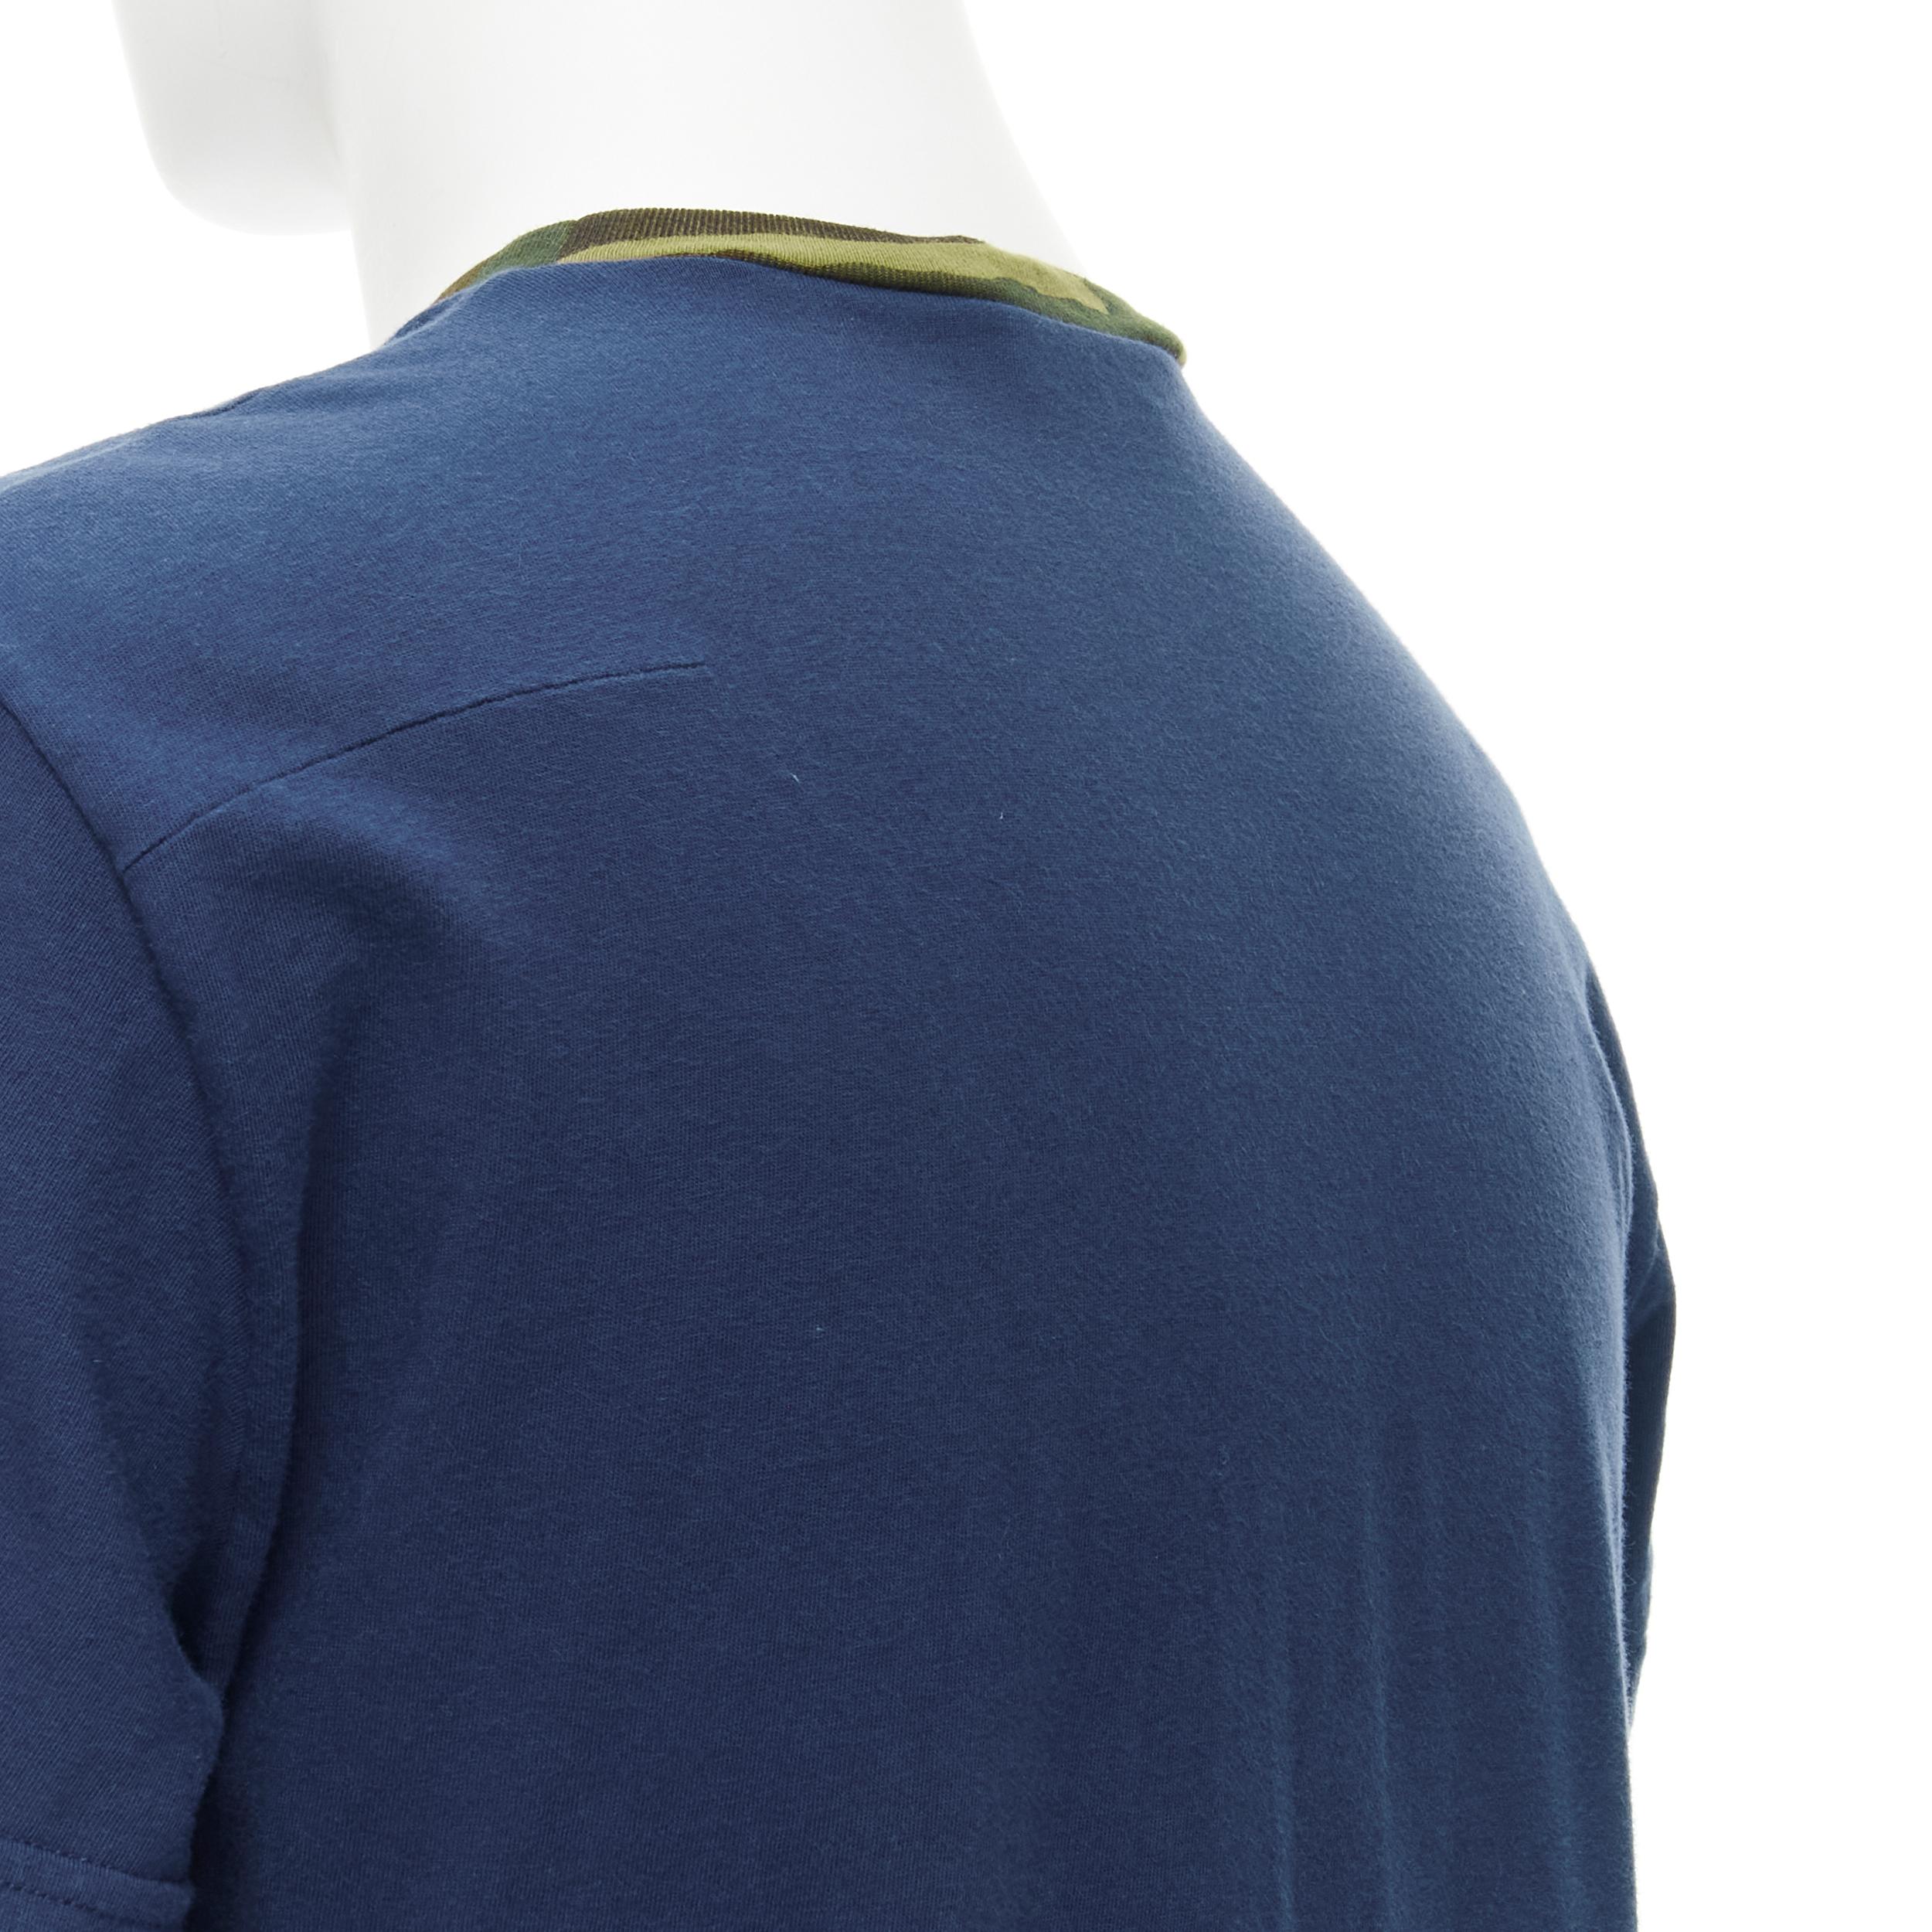 Men's DIOR HOMME Spring Summer 2016 green camo collar CD logo navy blue tshirt S